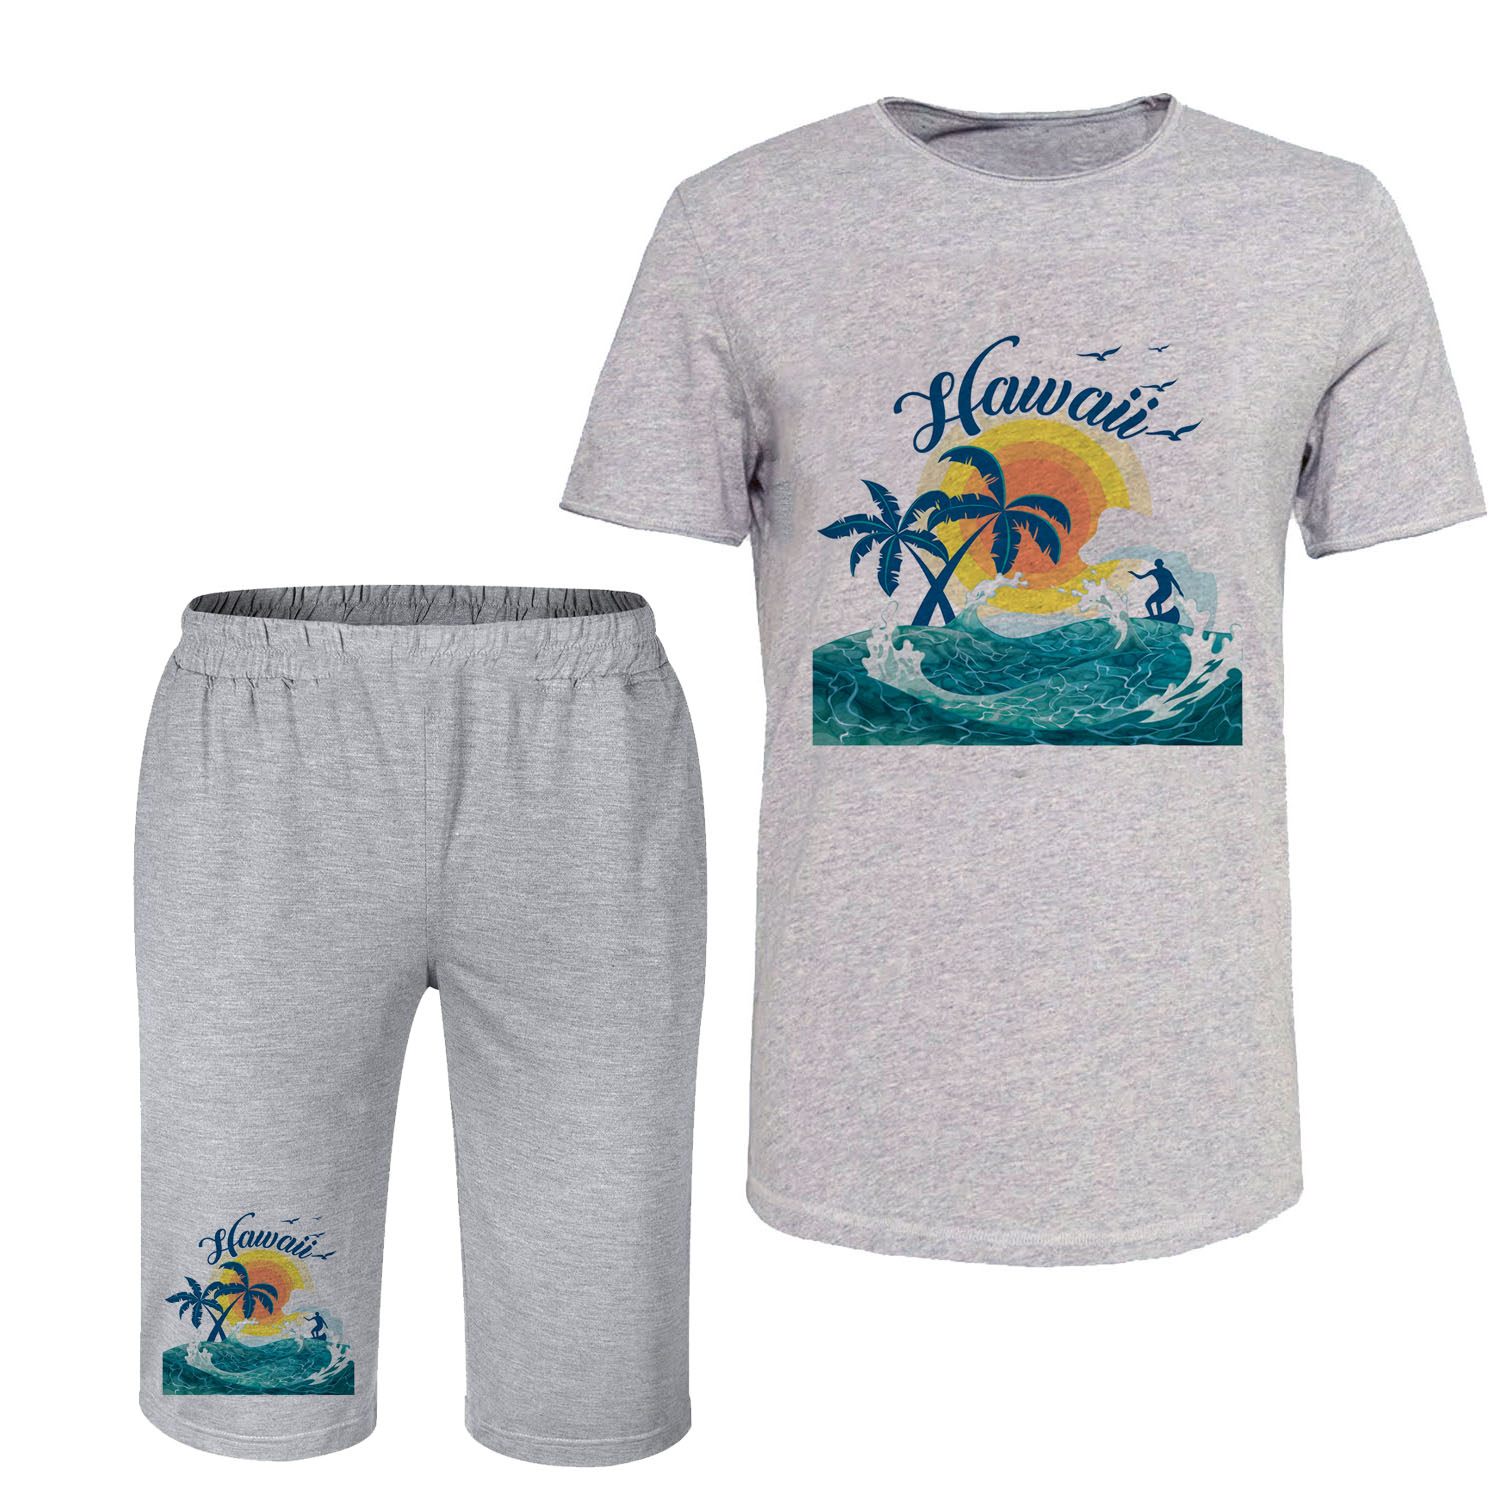 ست تی شرت آستین کوتاه و شلوارک مردانه مدل هاوایی کد C58 رنگ طوسی